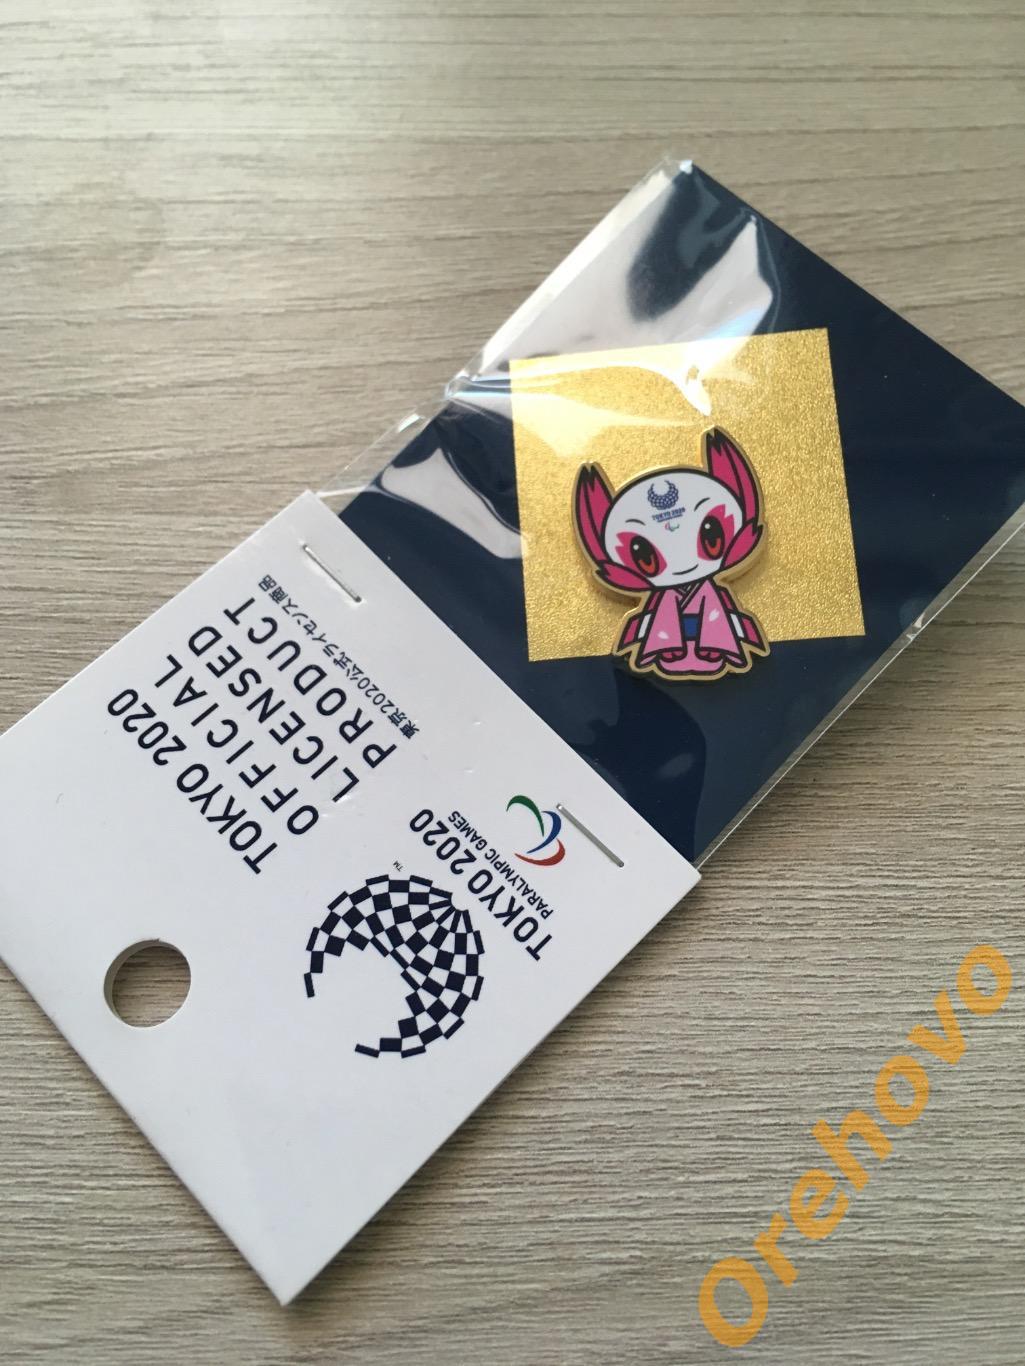 Значок Олимпийские игры 2020 Токио ( официальный, цанга)